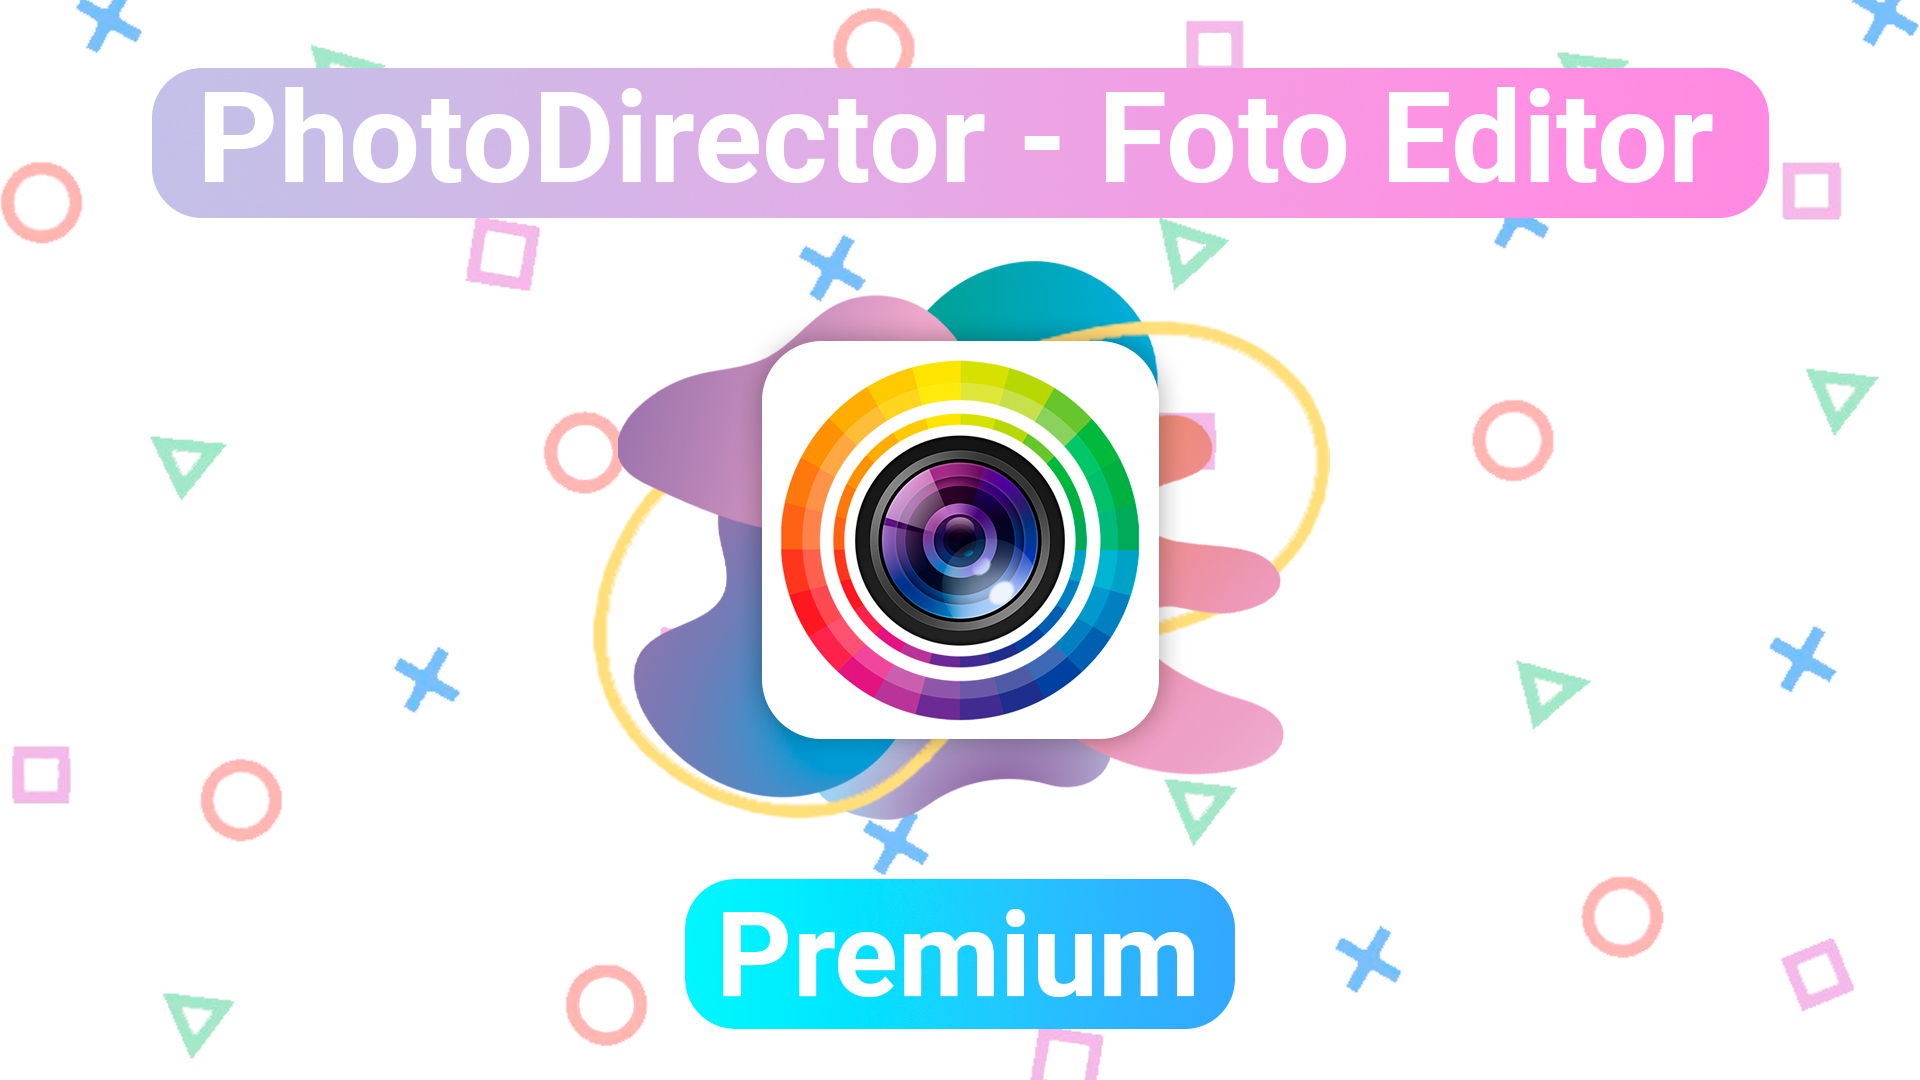 photodirector-foto-editor-premium-todo-desbloqueado-ultima-version